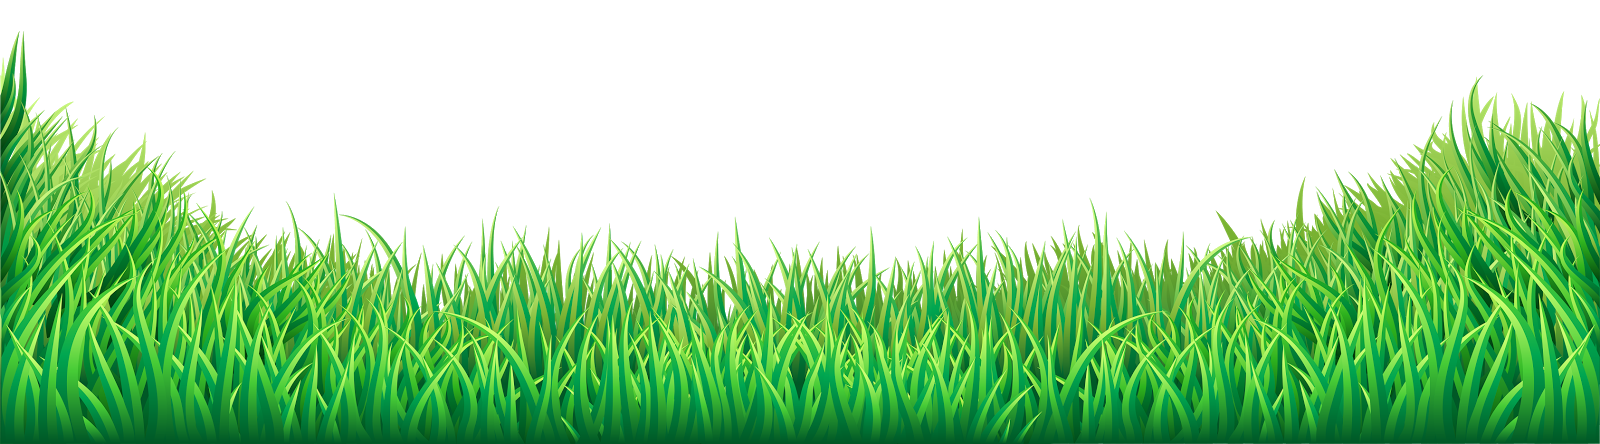 pin Wallpaper clipart grass #